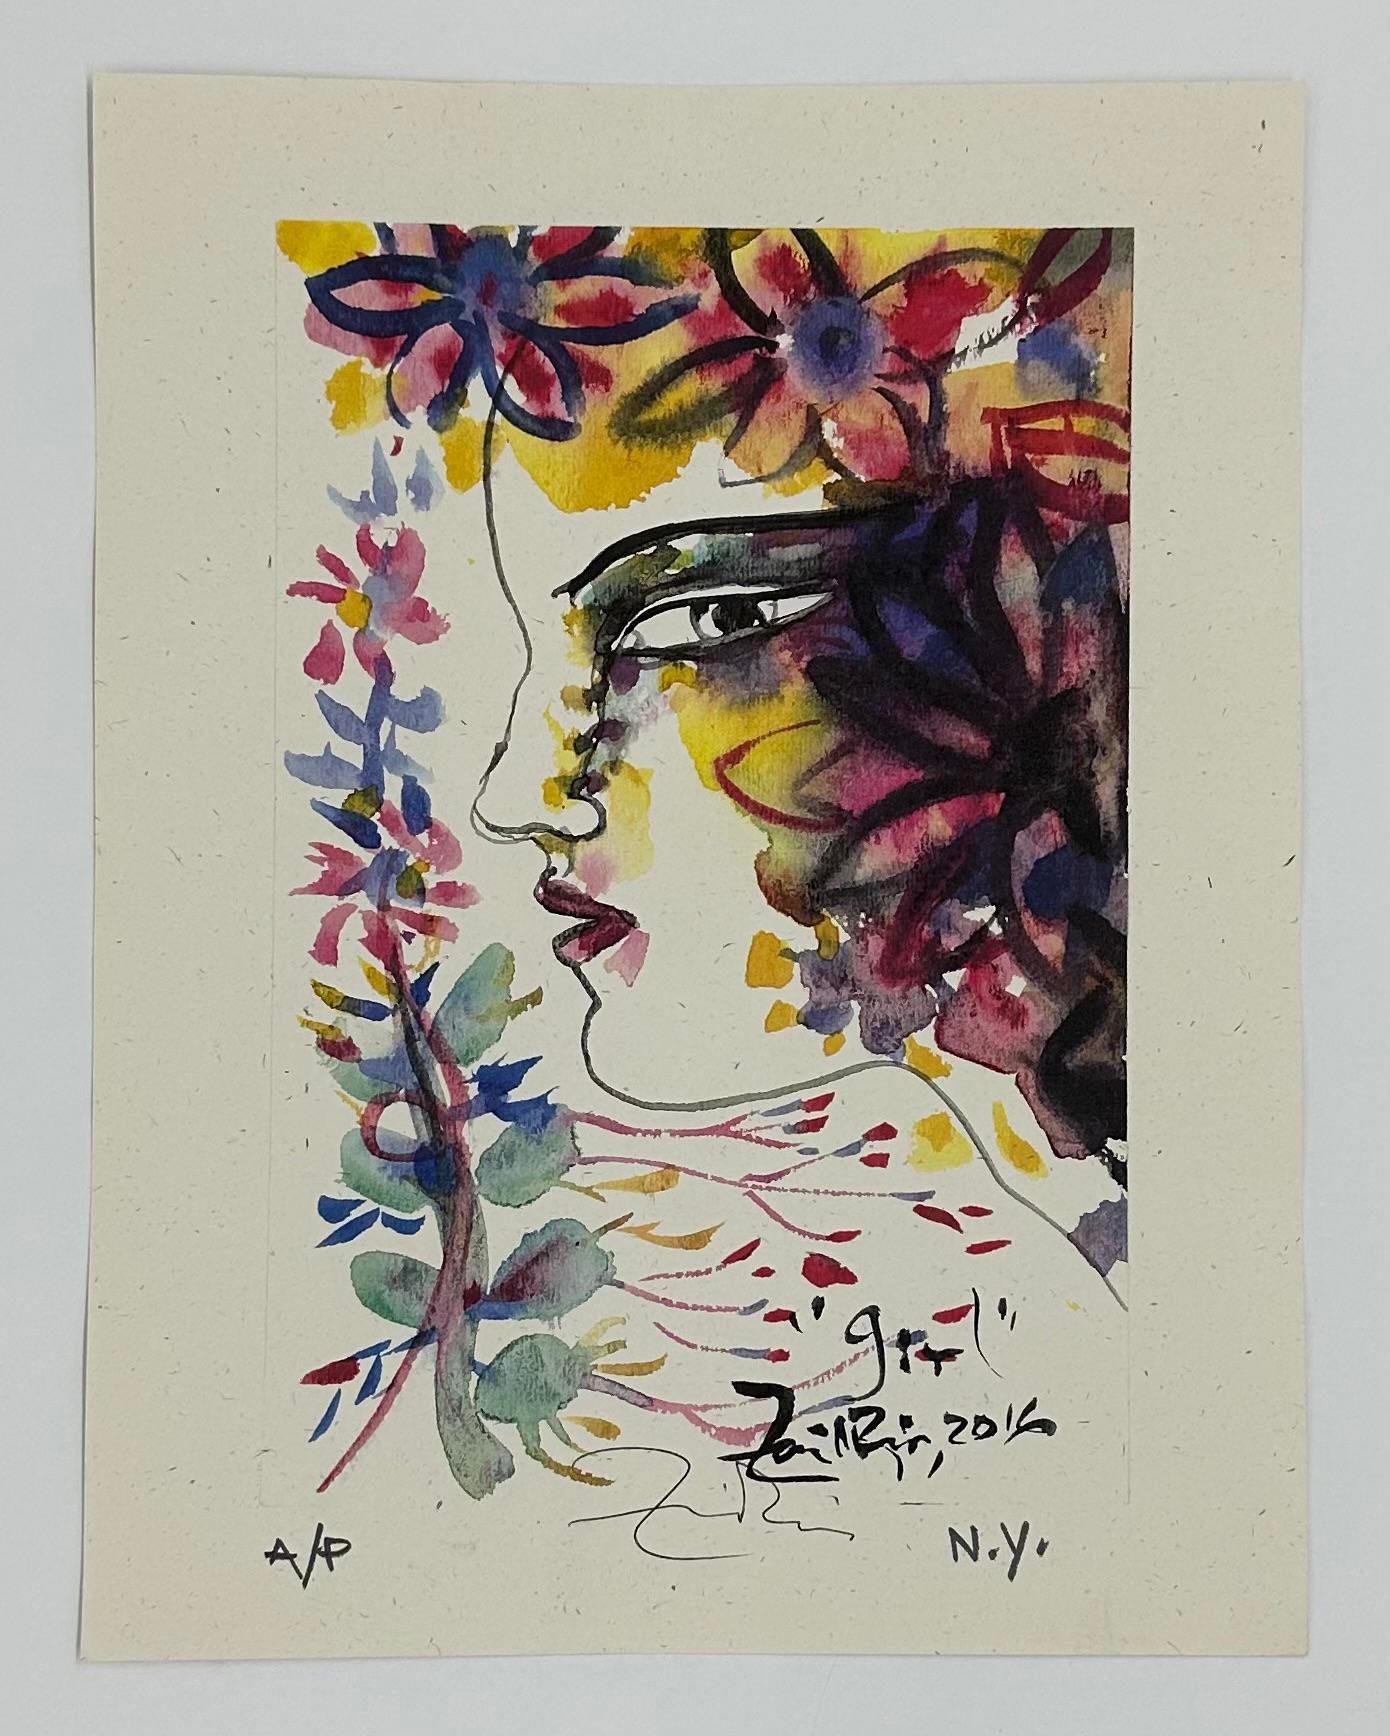 Zaida del Rio, Cuban Artist, Digital print, 11.1 x 8.3 in n7